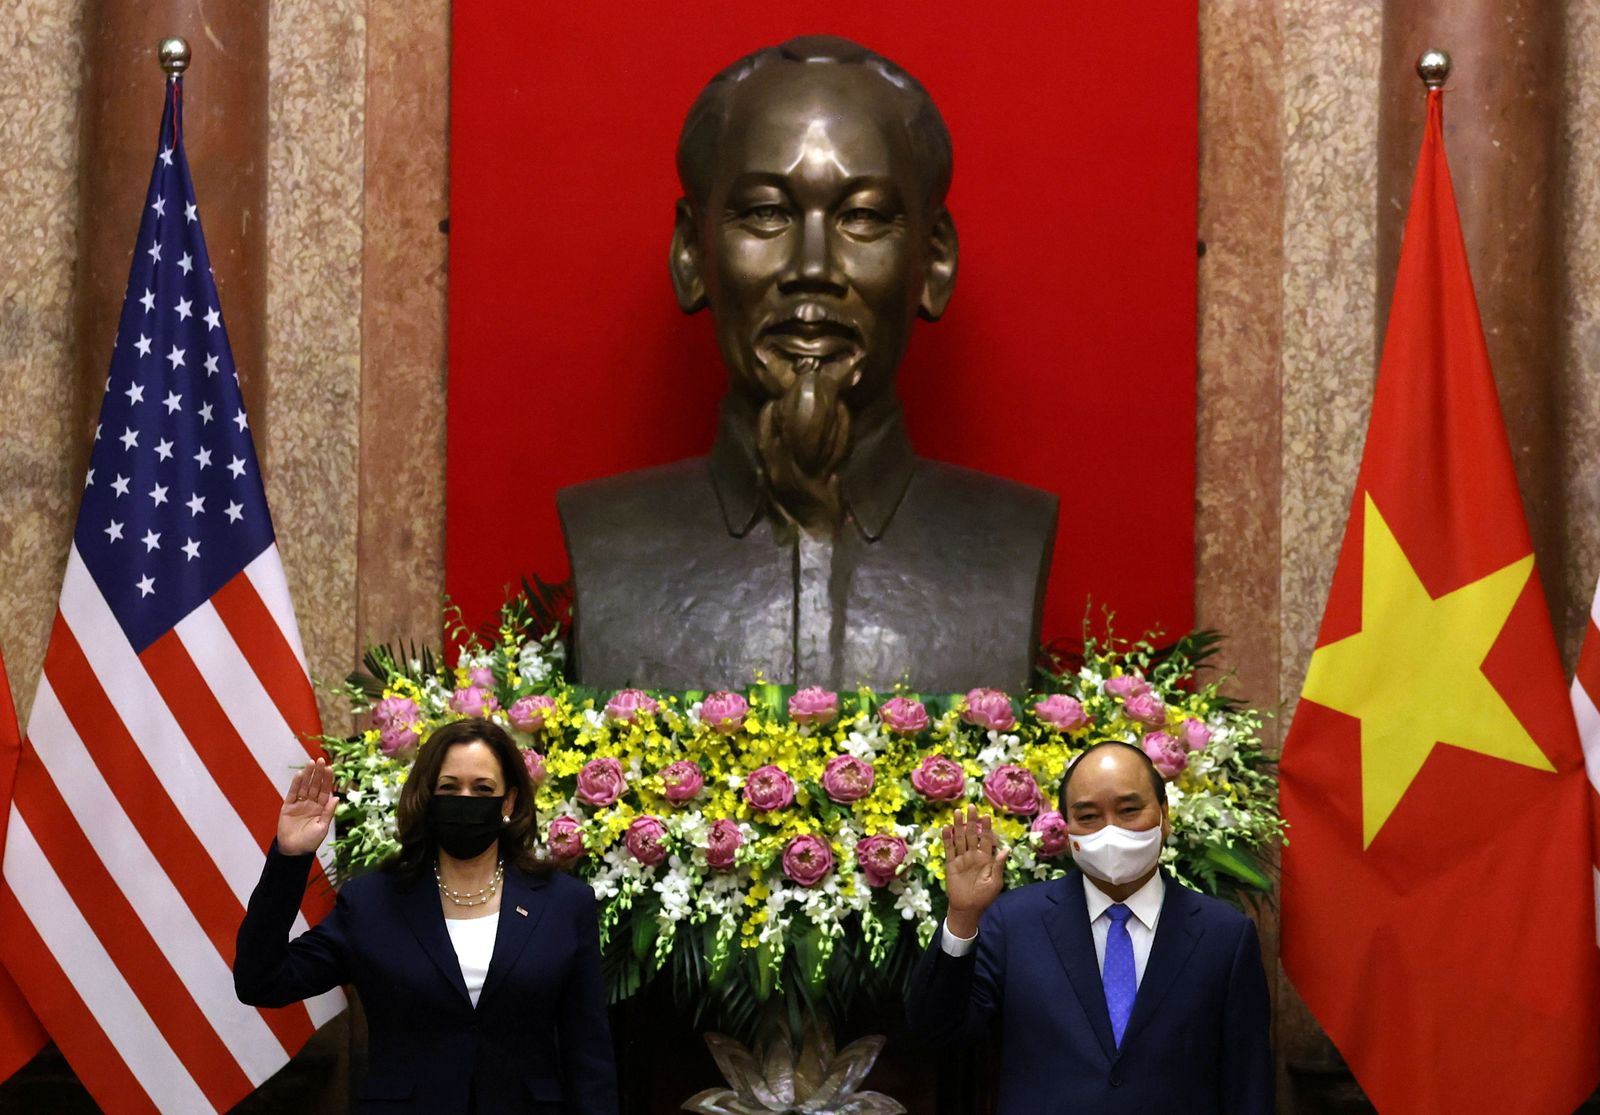 الرئيس الفيتنامي نغوين شوان فوك ونائبة الرئيس الأميركي كامالا هاريس في قصر الرئاسة بهانوي - 25 أغسطس 2021 - REUTERS